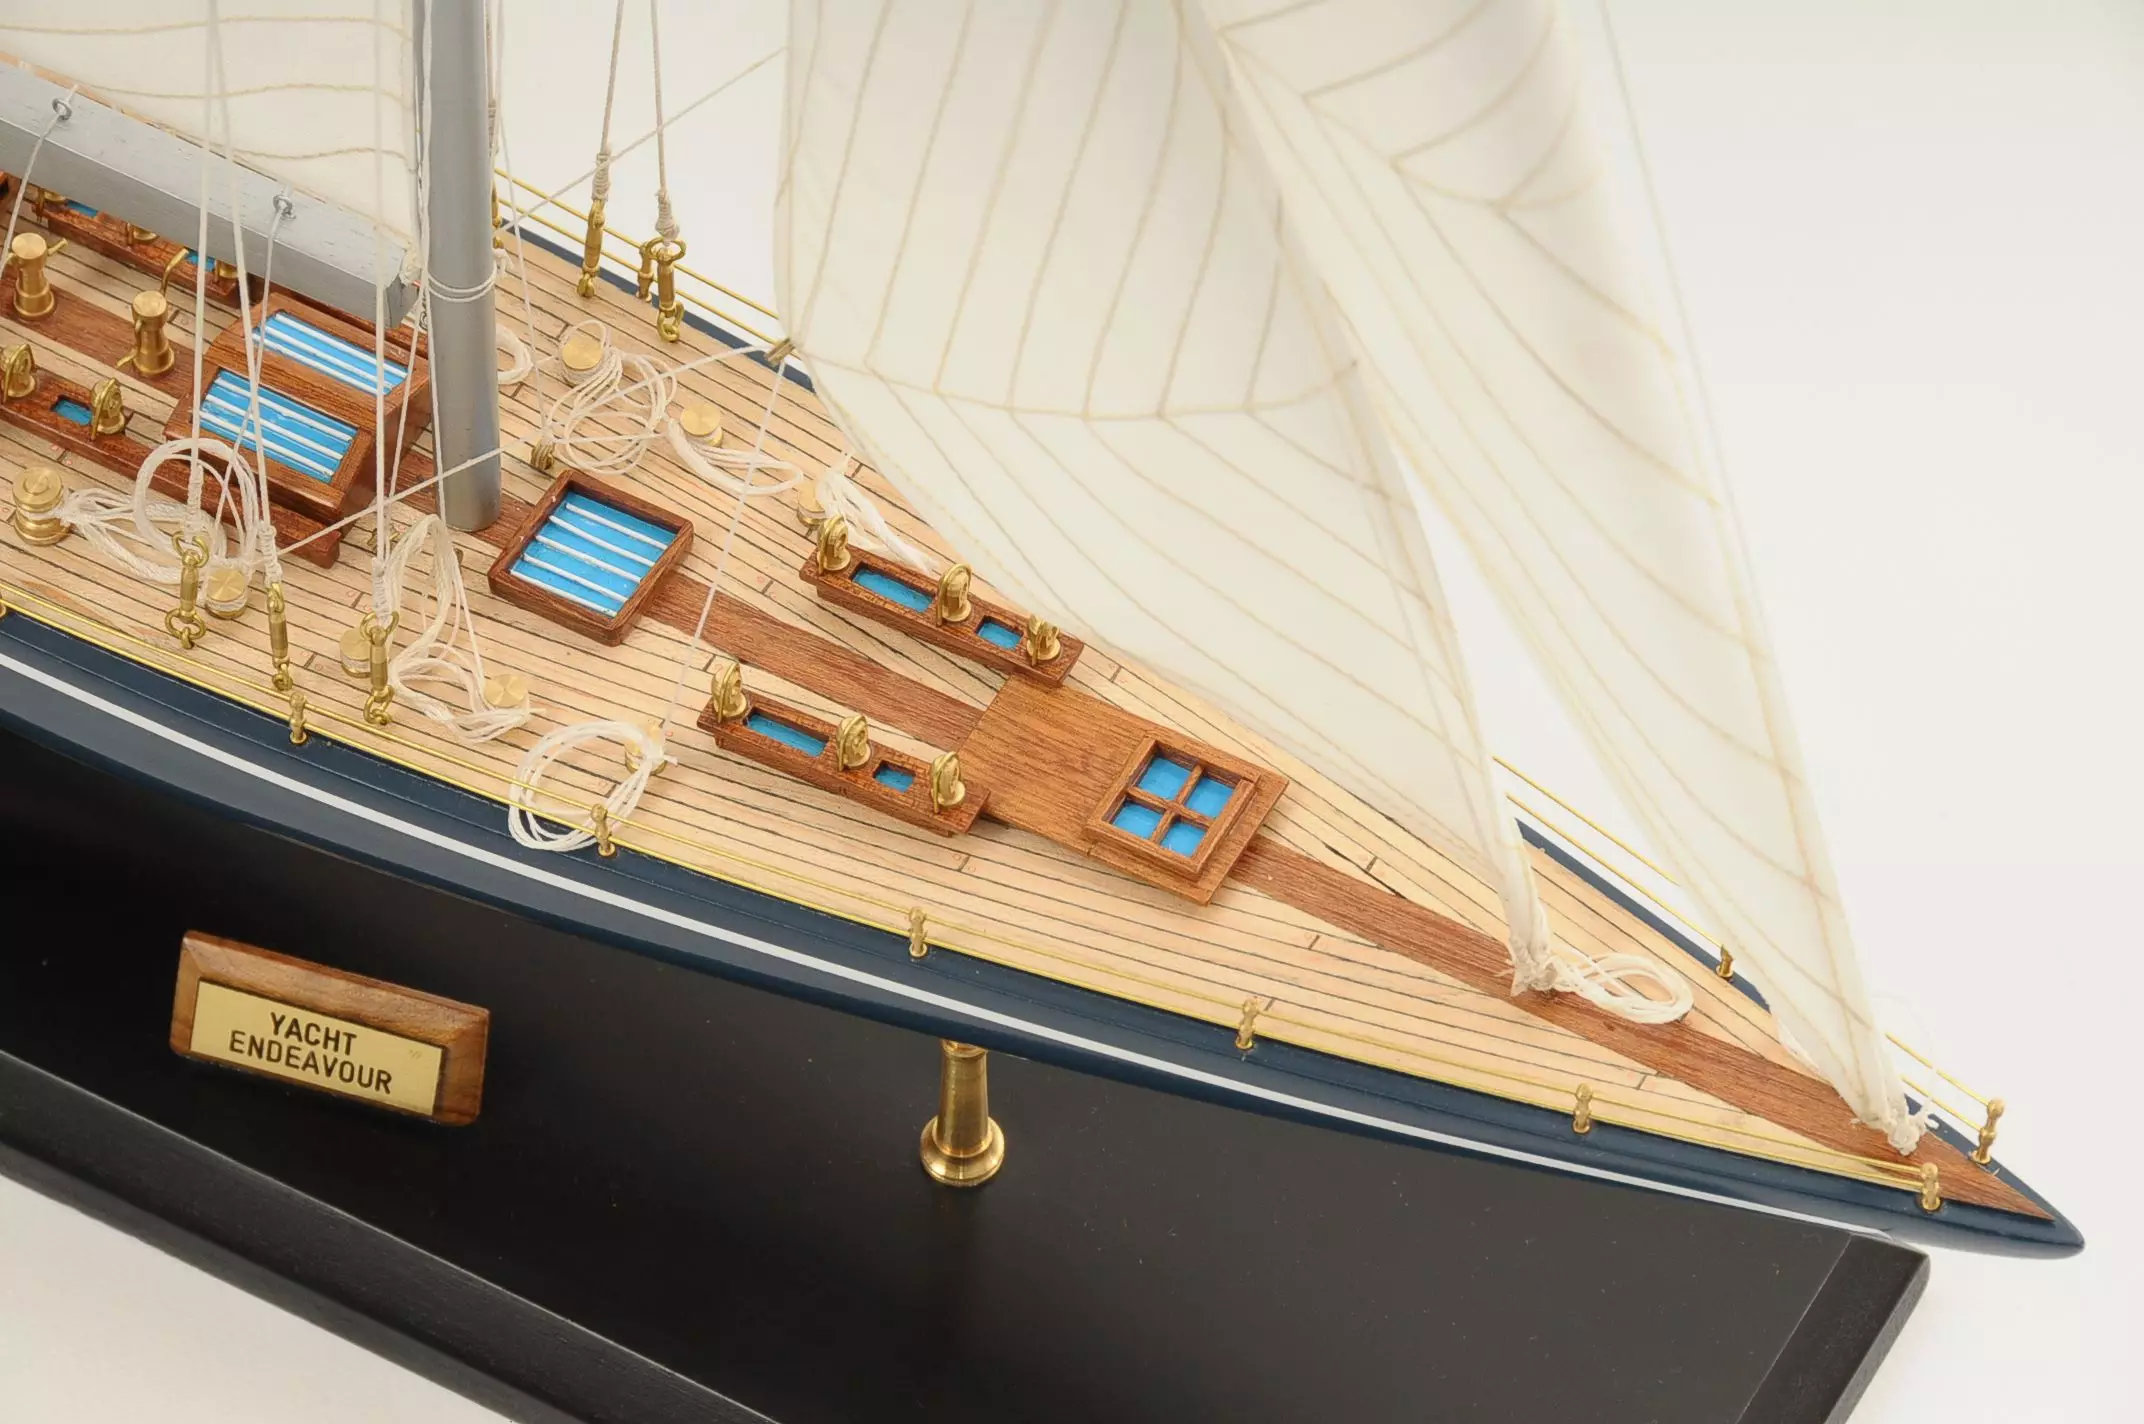 model wooden sailing yachts